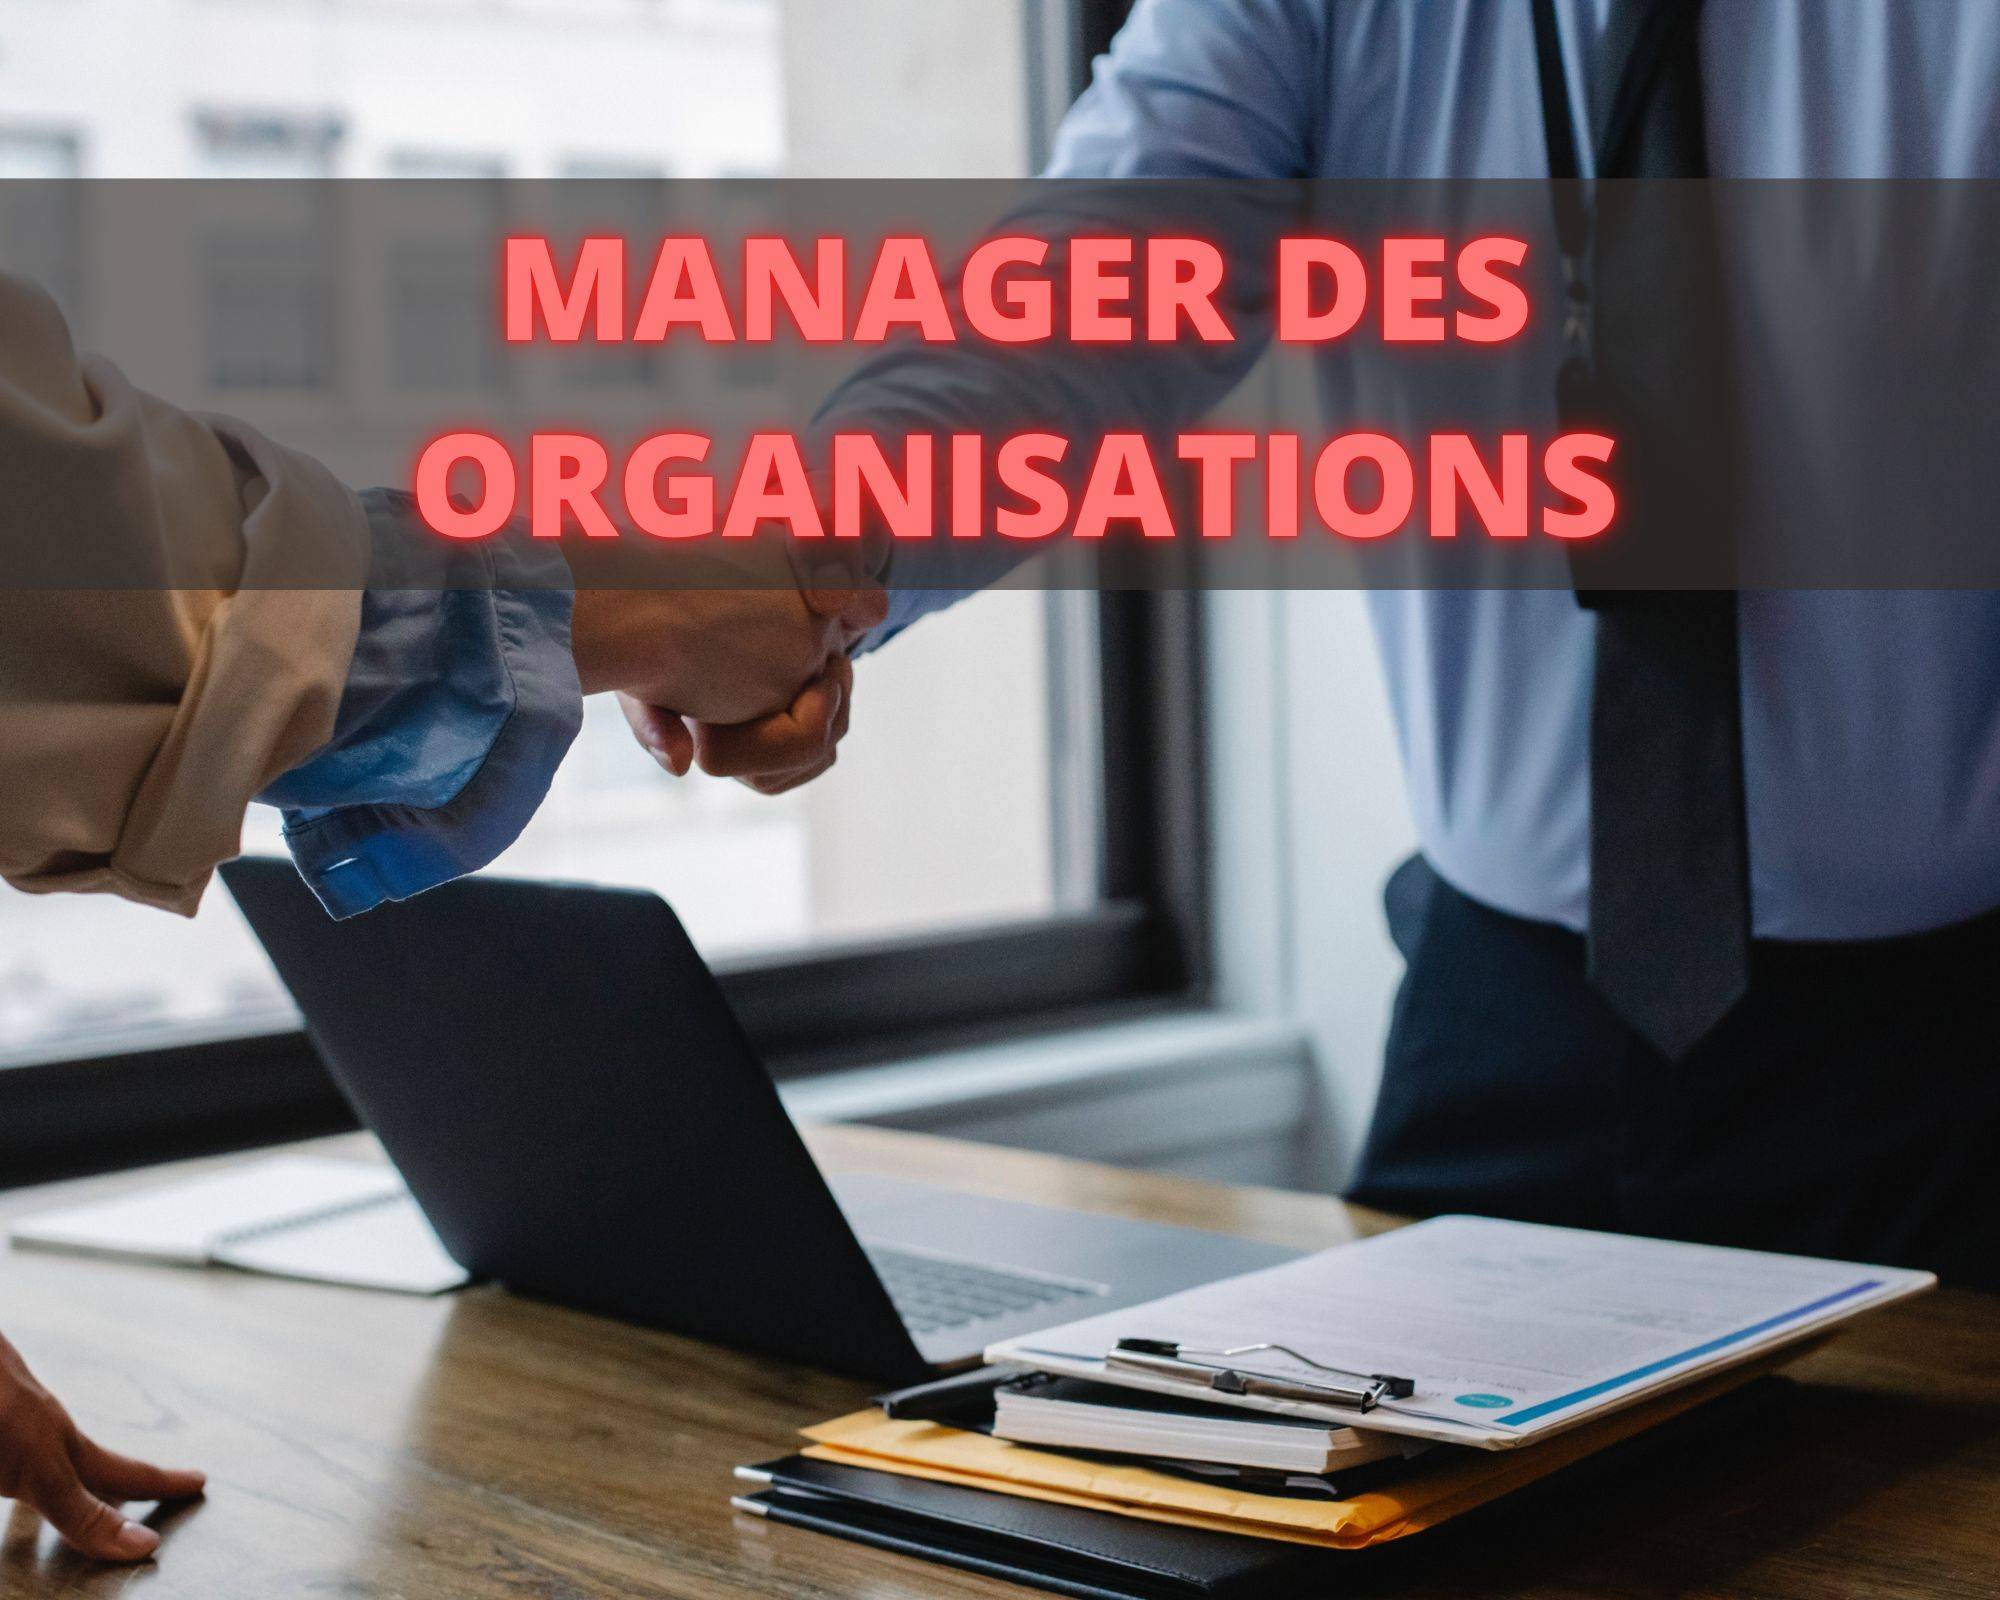 Mastère Européen Management et Stratégie d’Entreprise - Certification professionnelle Niveau 7 Manager des Organisations par CDE FEDE France